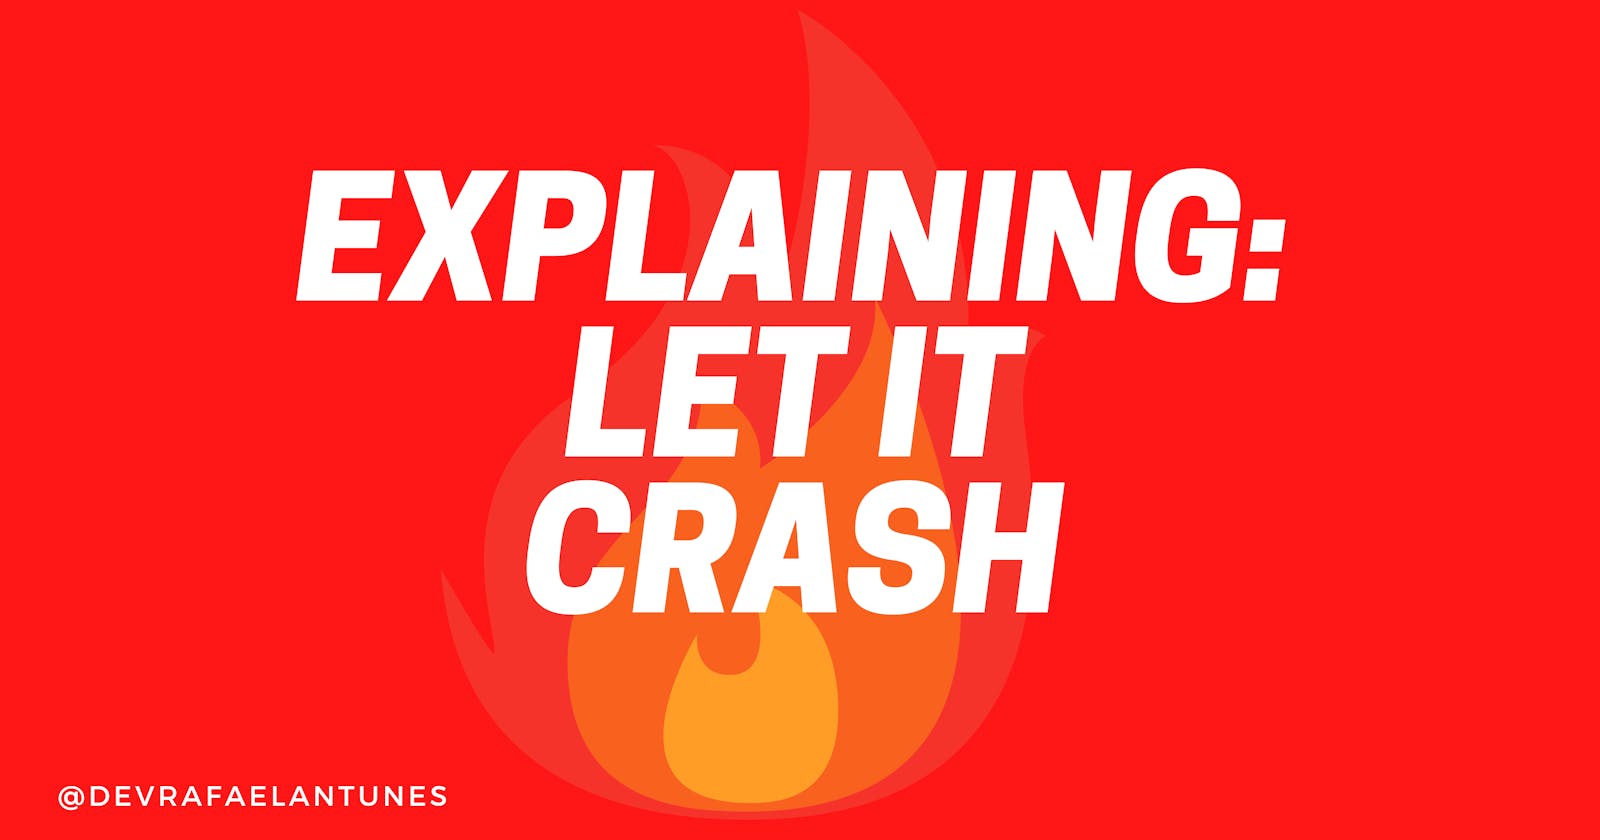 Understanding the "Let It Crash" philosophy